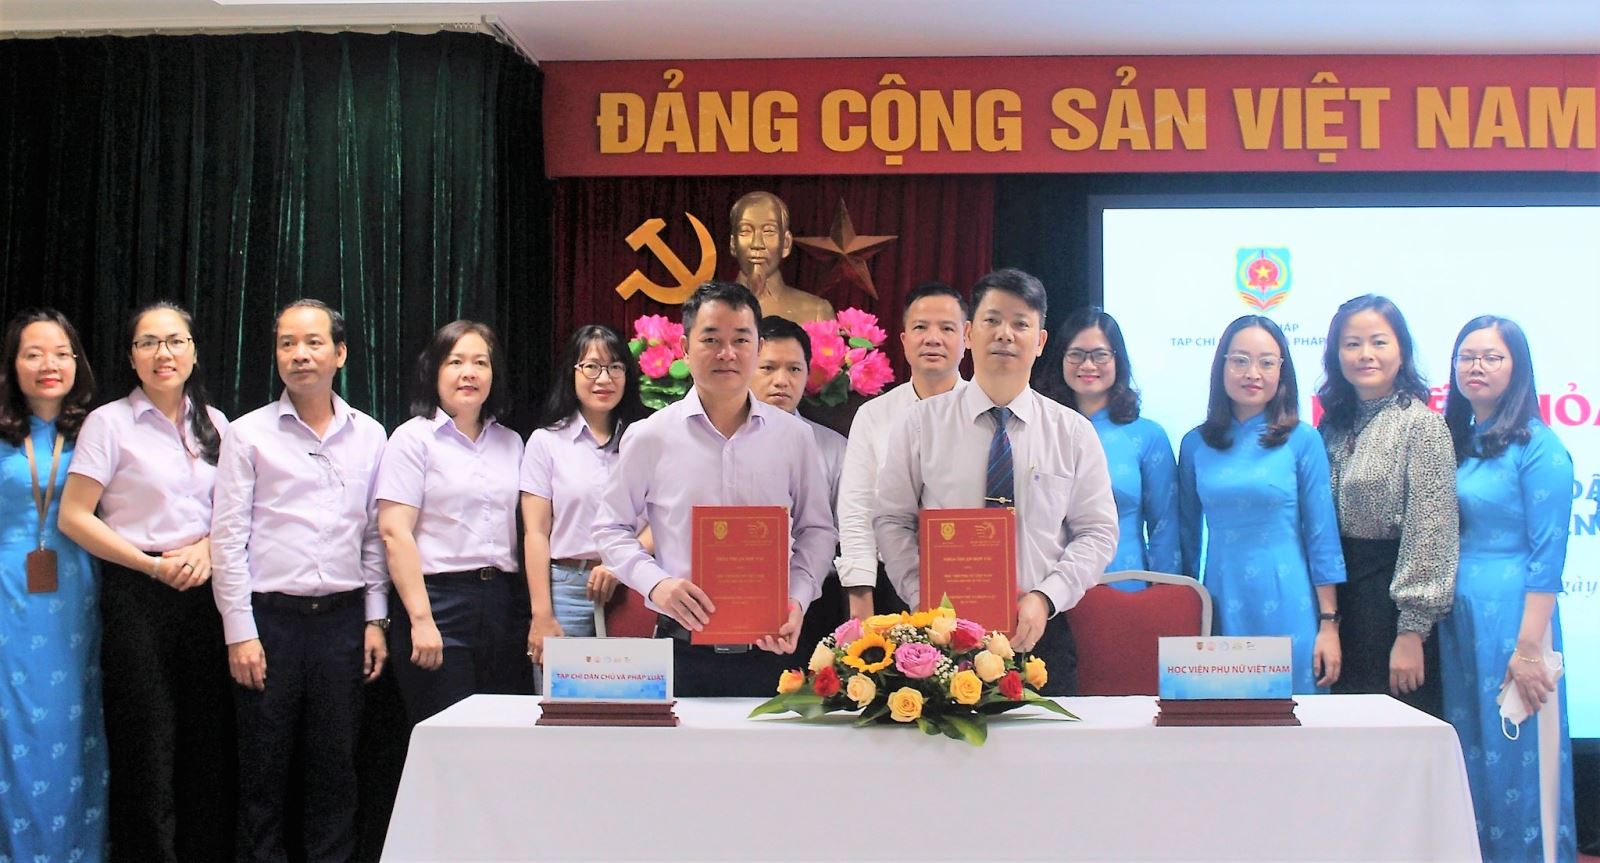 Tạp chí Dân chủ và Pháp luật và Học viện Phụ nữ Việt Nam ký thoả thuận hợp tác